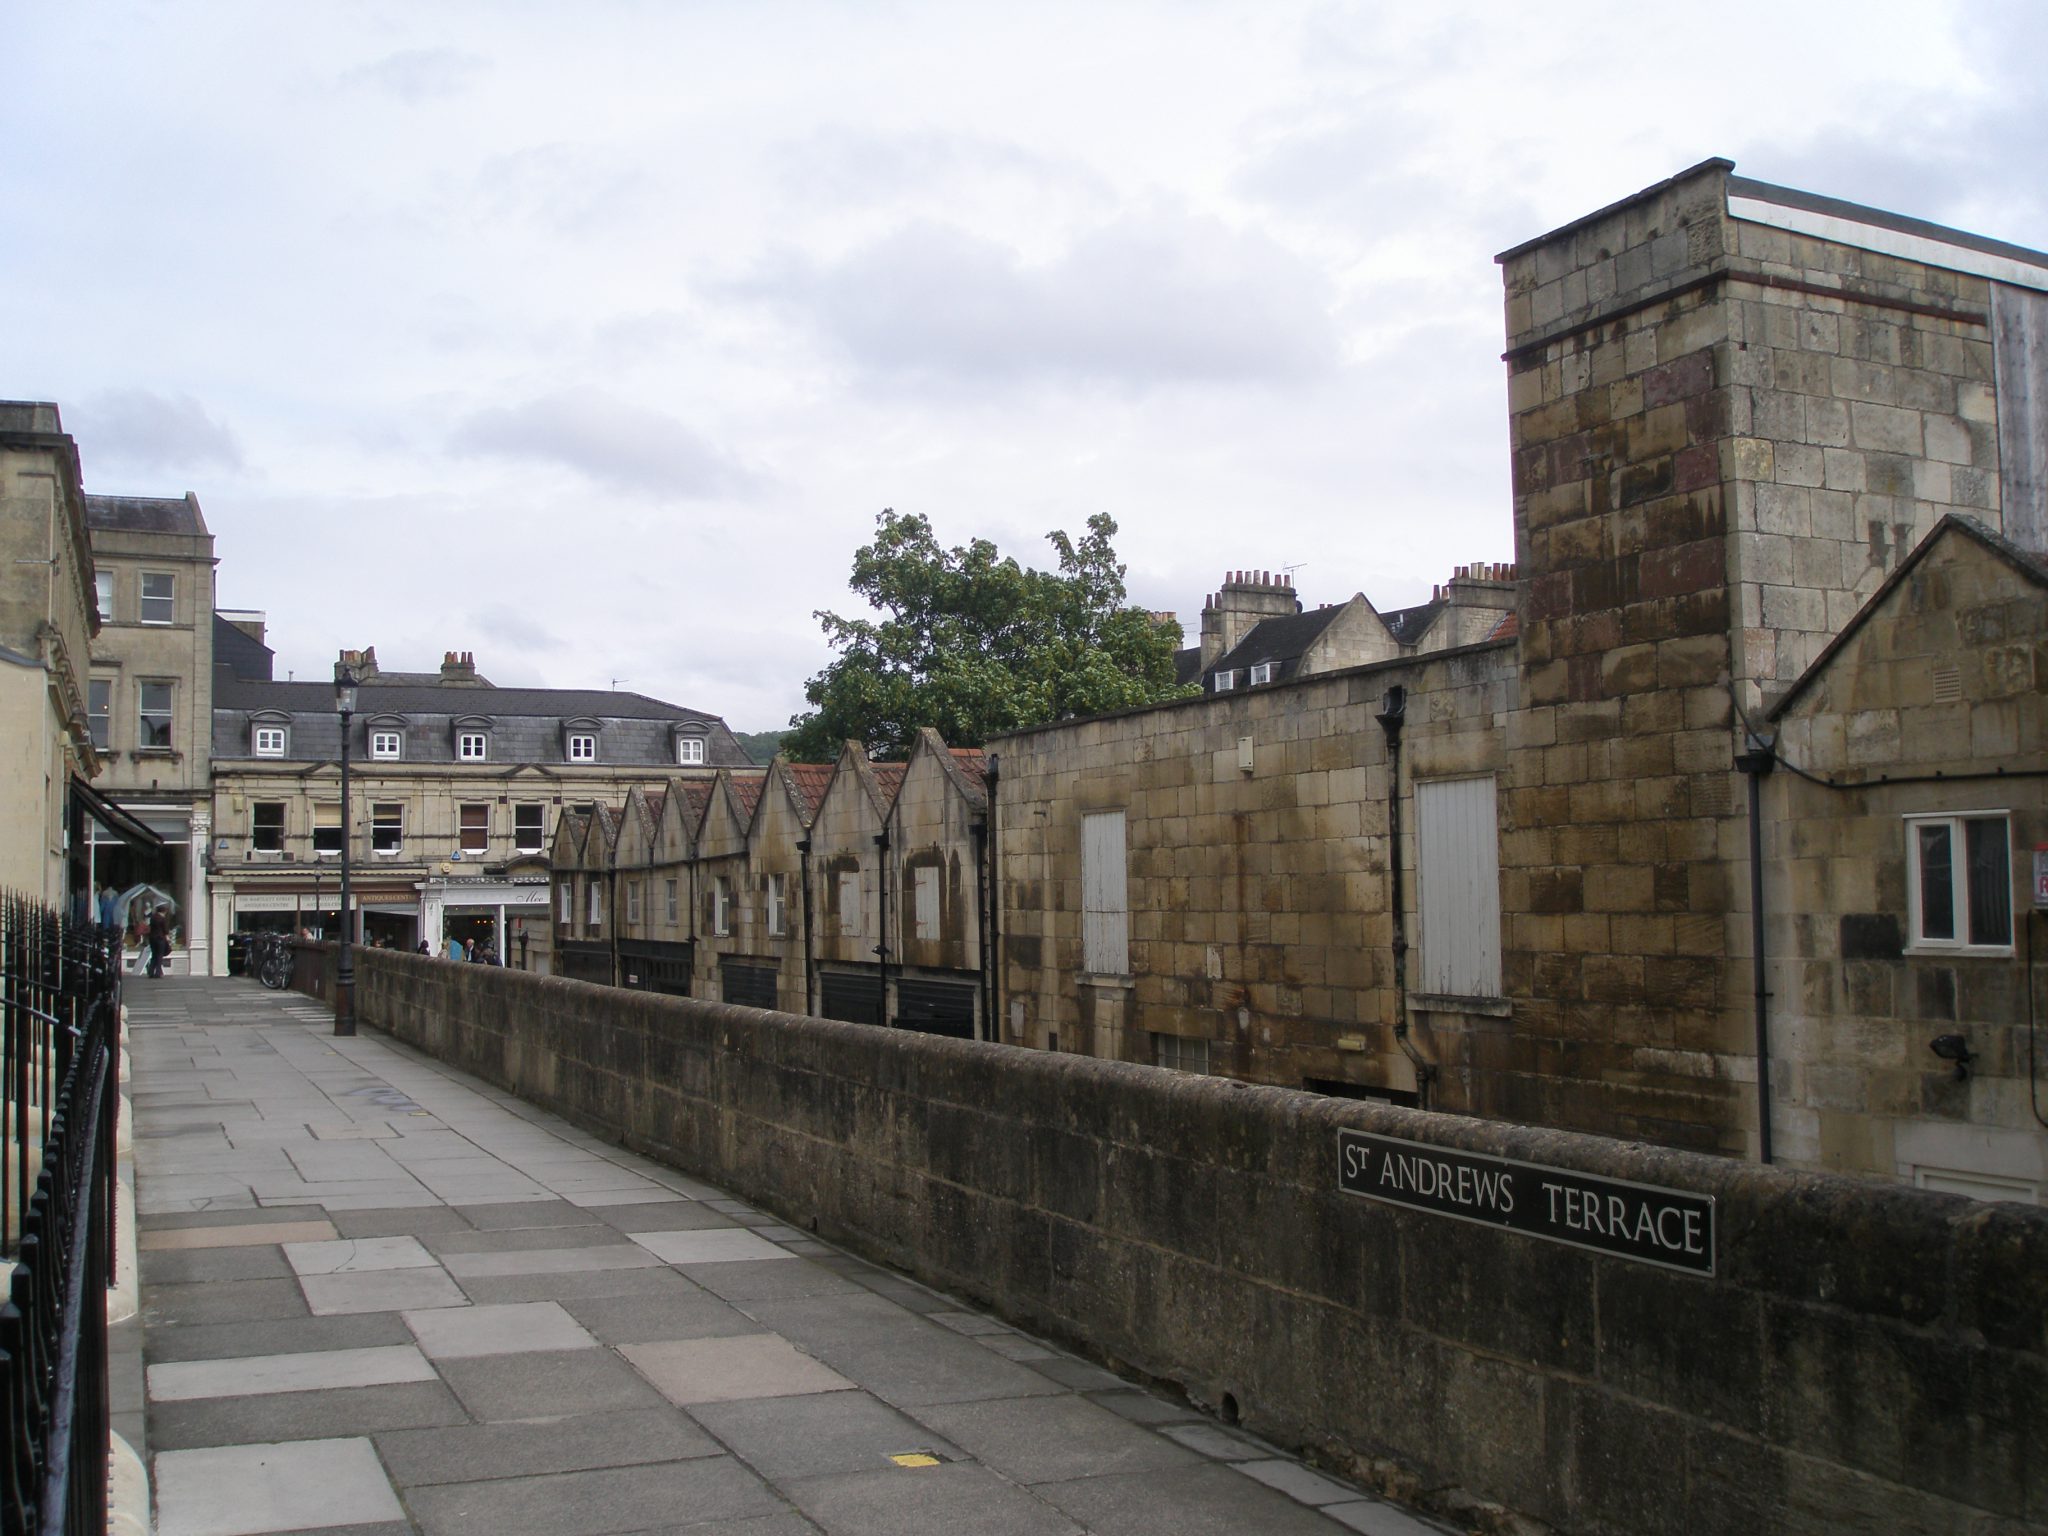 Saint Andrew's Terrace, overlooking Stable Lane